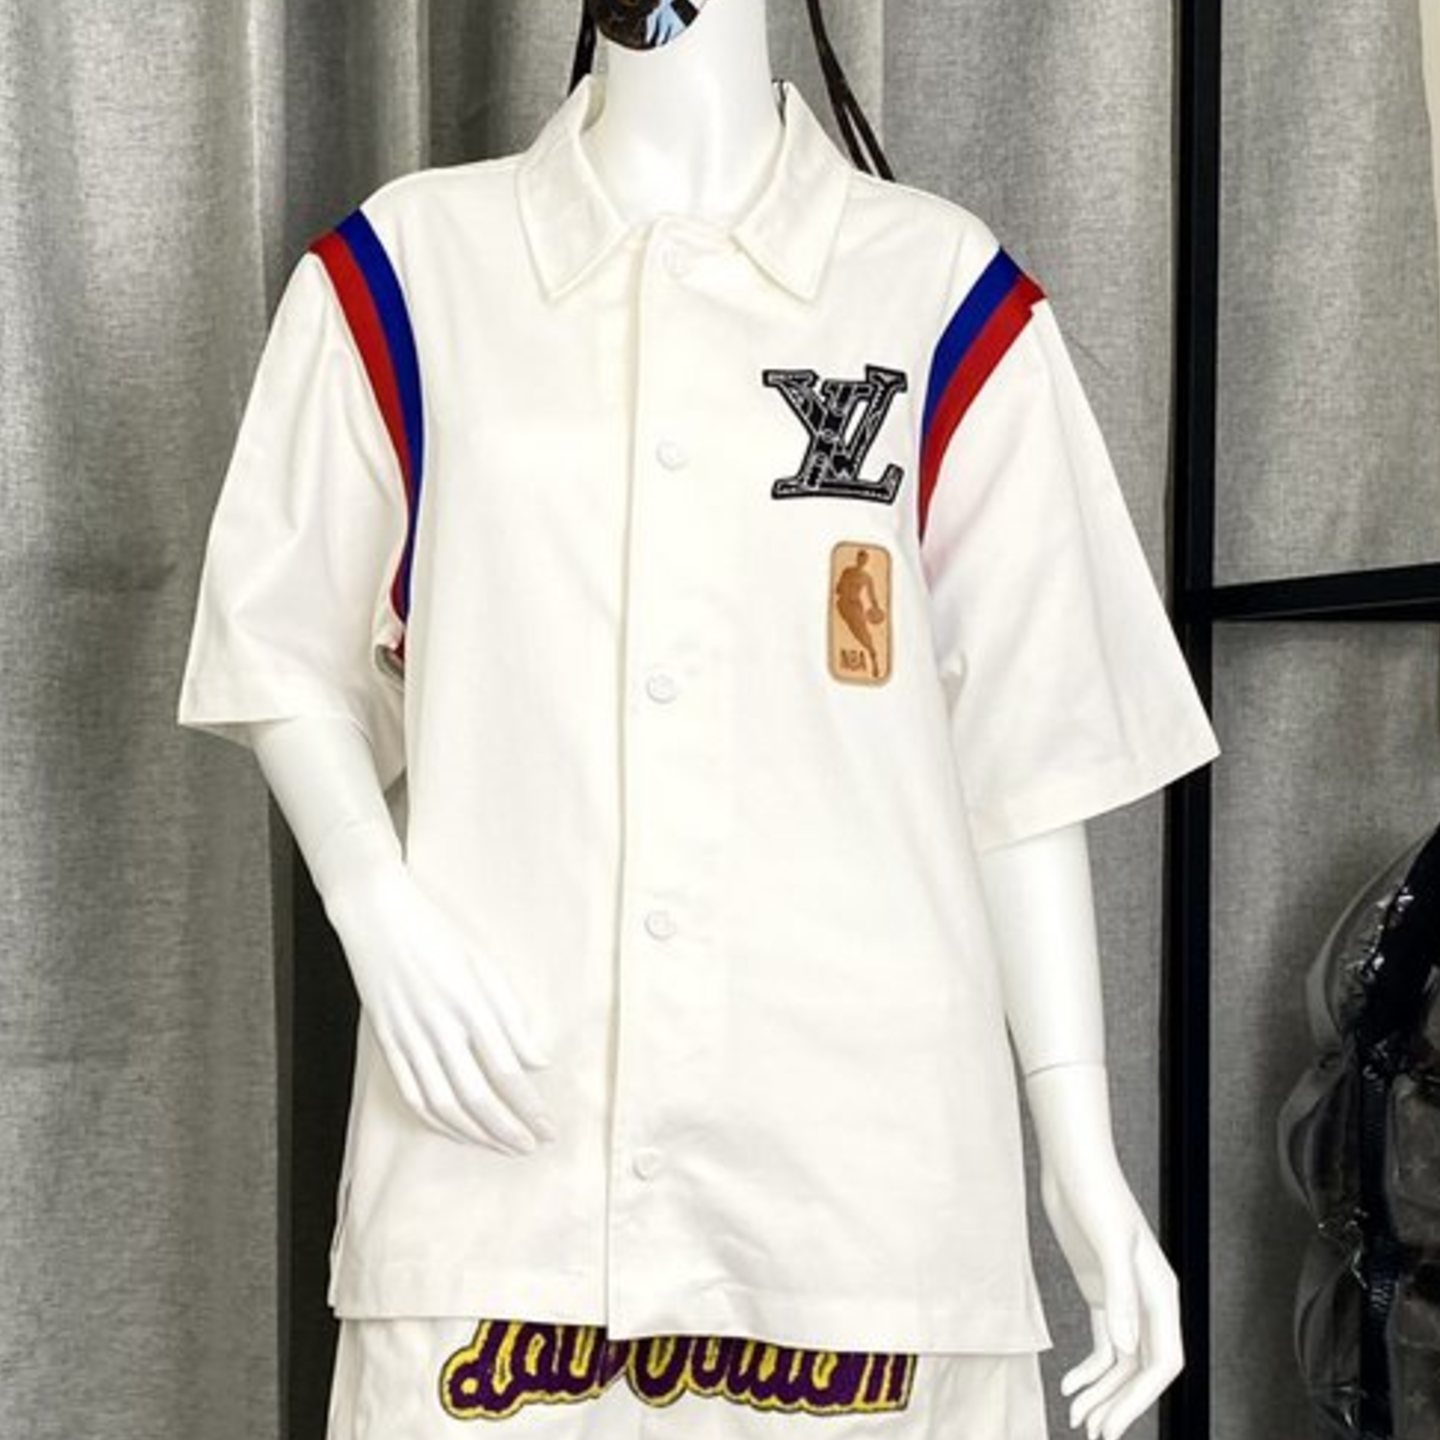 Louis Vuitton x NBA Basketball Short-Sleeved Shirt